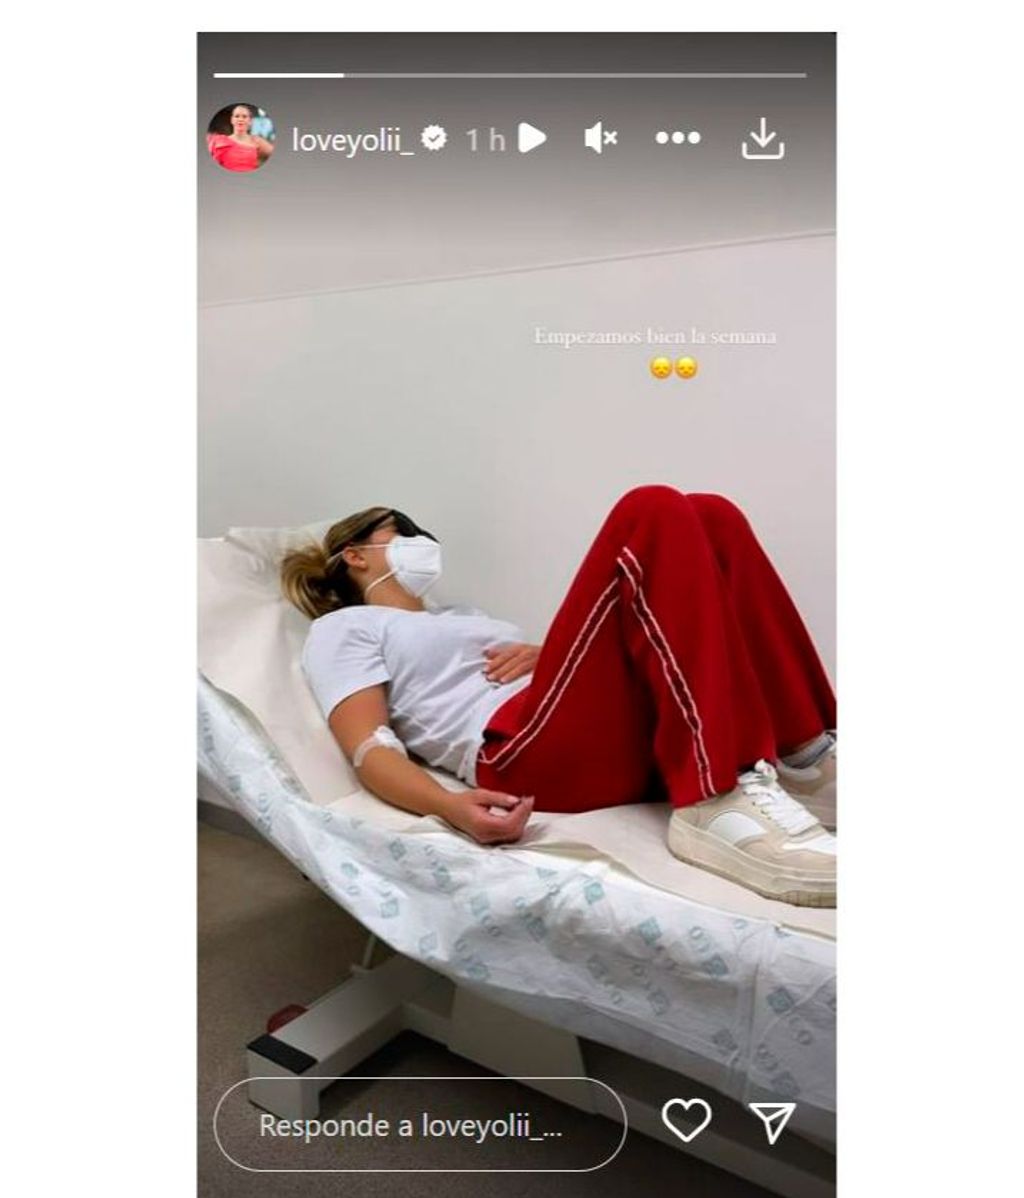 Yoli preocupa a sus seguidores con una imagen desde el hospital